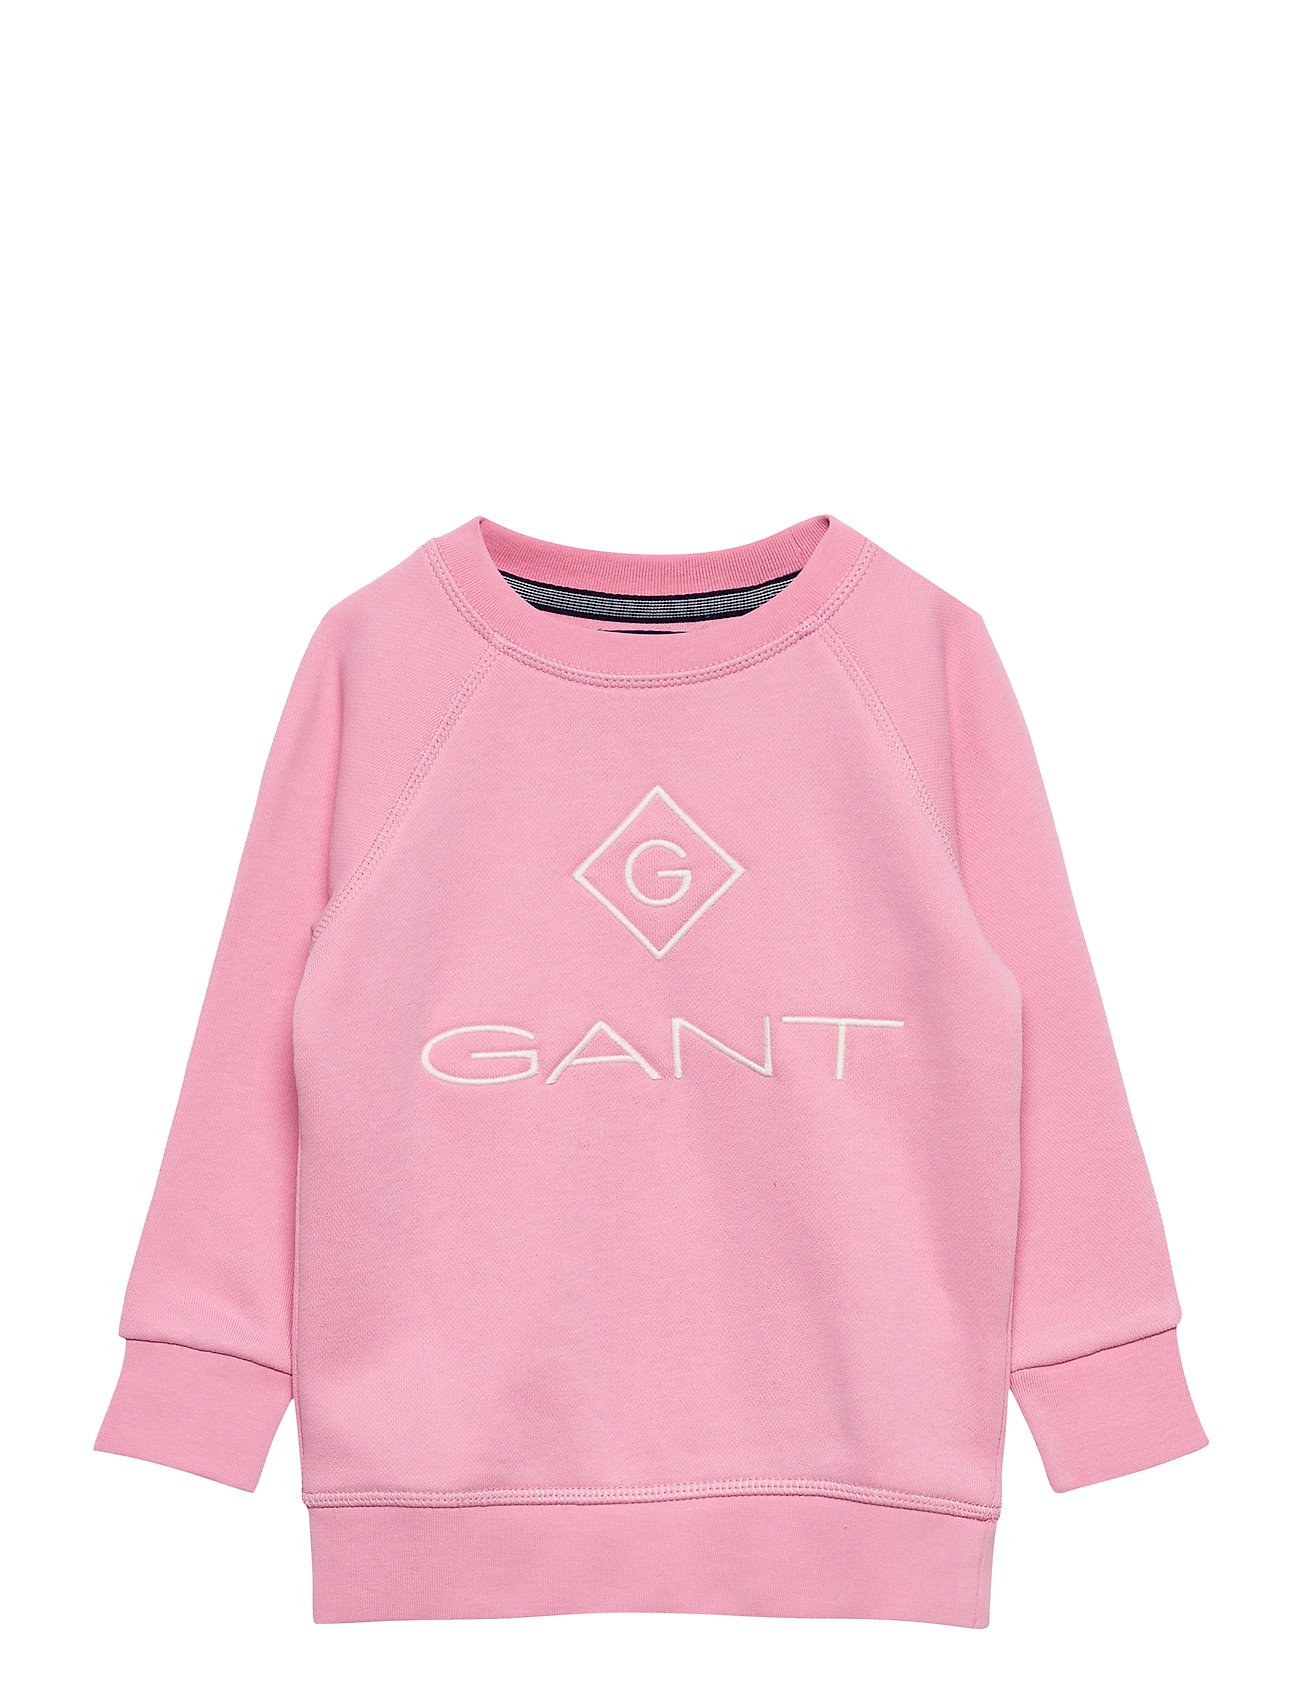 Gant Lock-Up Sweat C-Neck Trøje Lyserød GANT sweatshirts fra GANT til børn i Blå - Pashion.dk